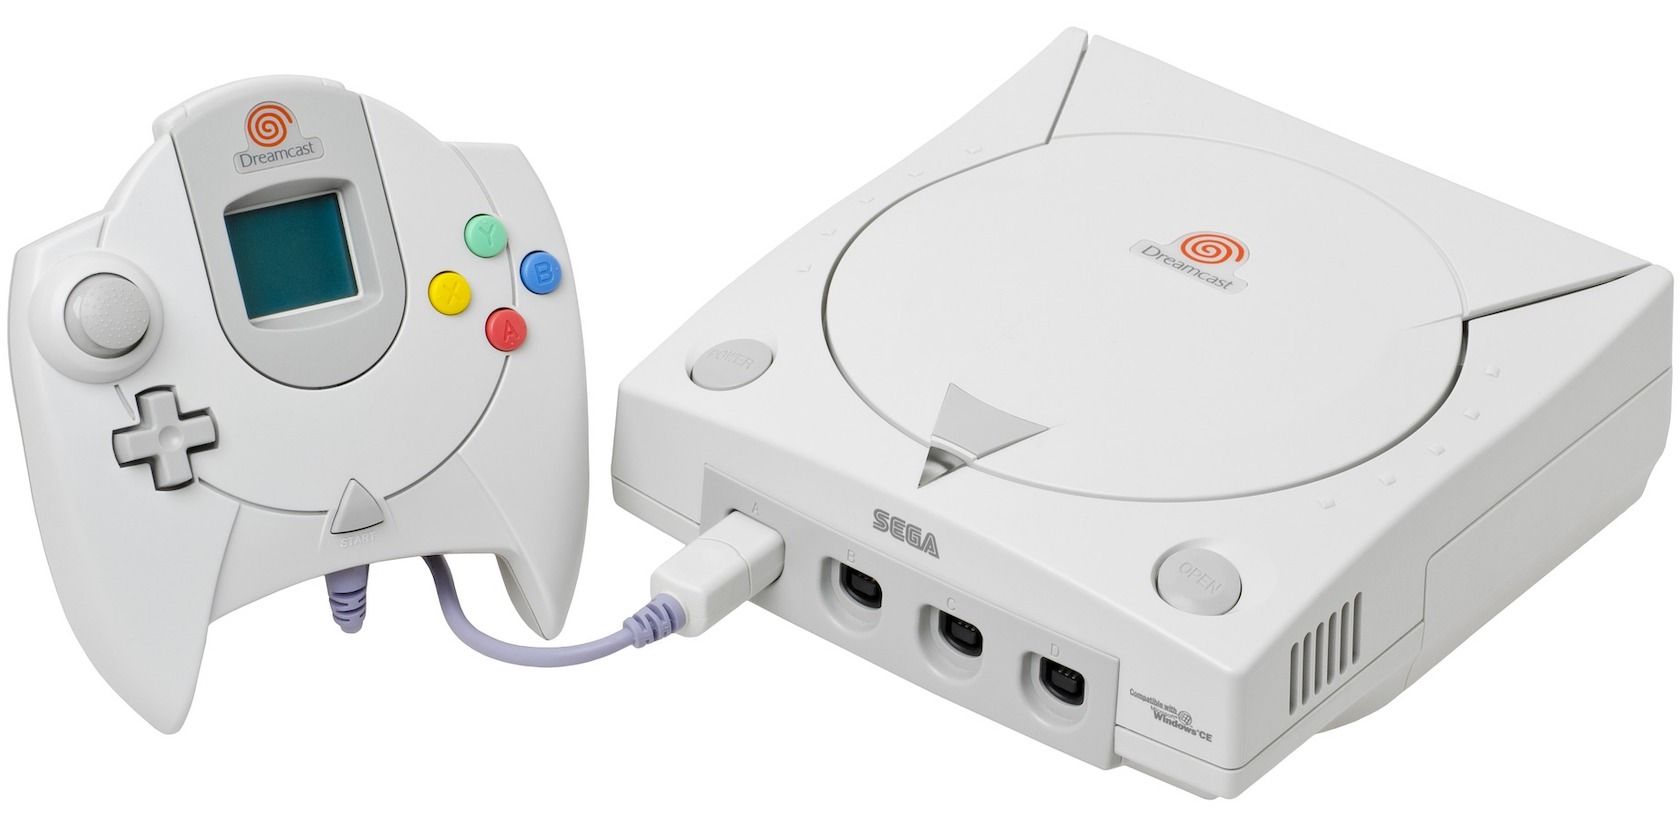 sega dreamcast and controller - Quando le buone console falliscono: il SEGA Dreamcast